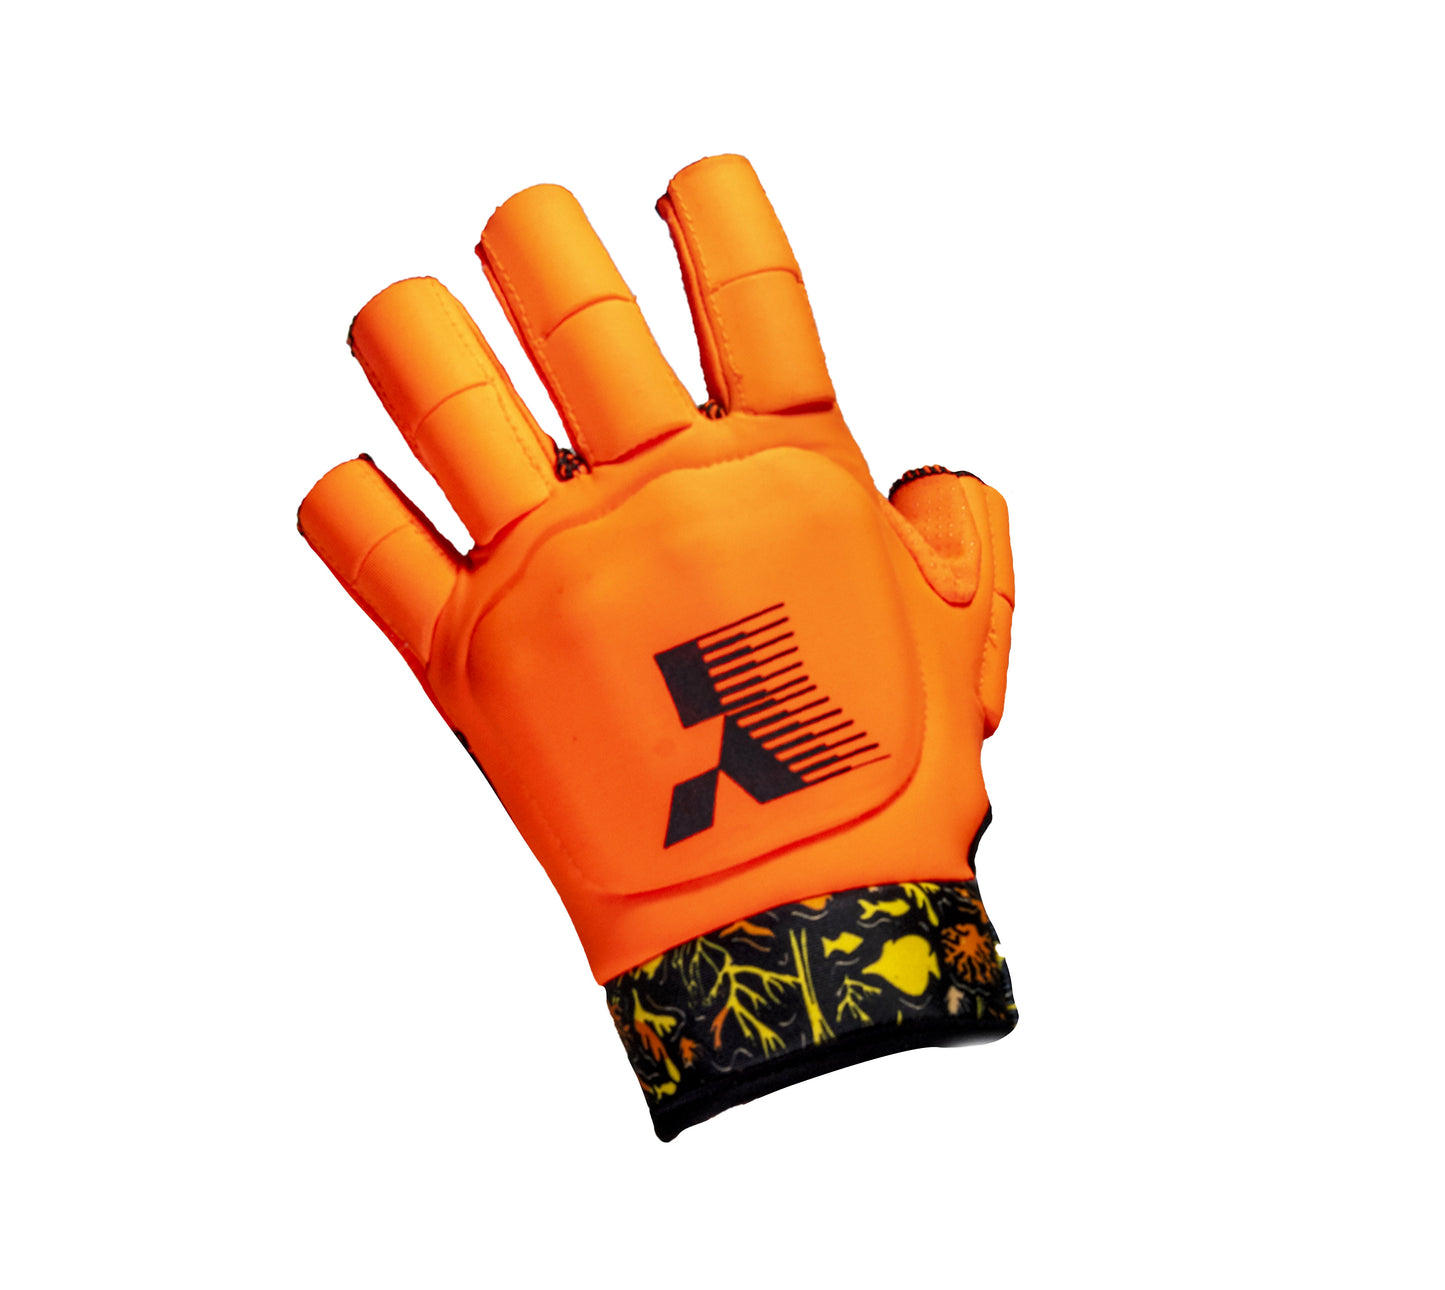 MK6 Glove